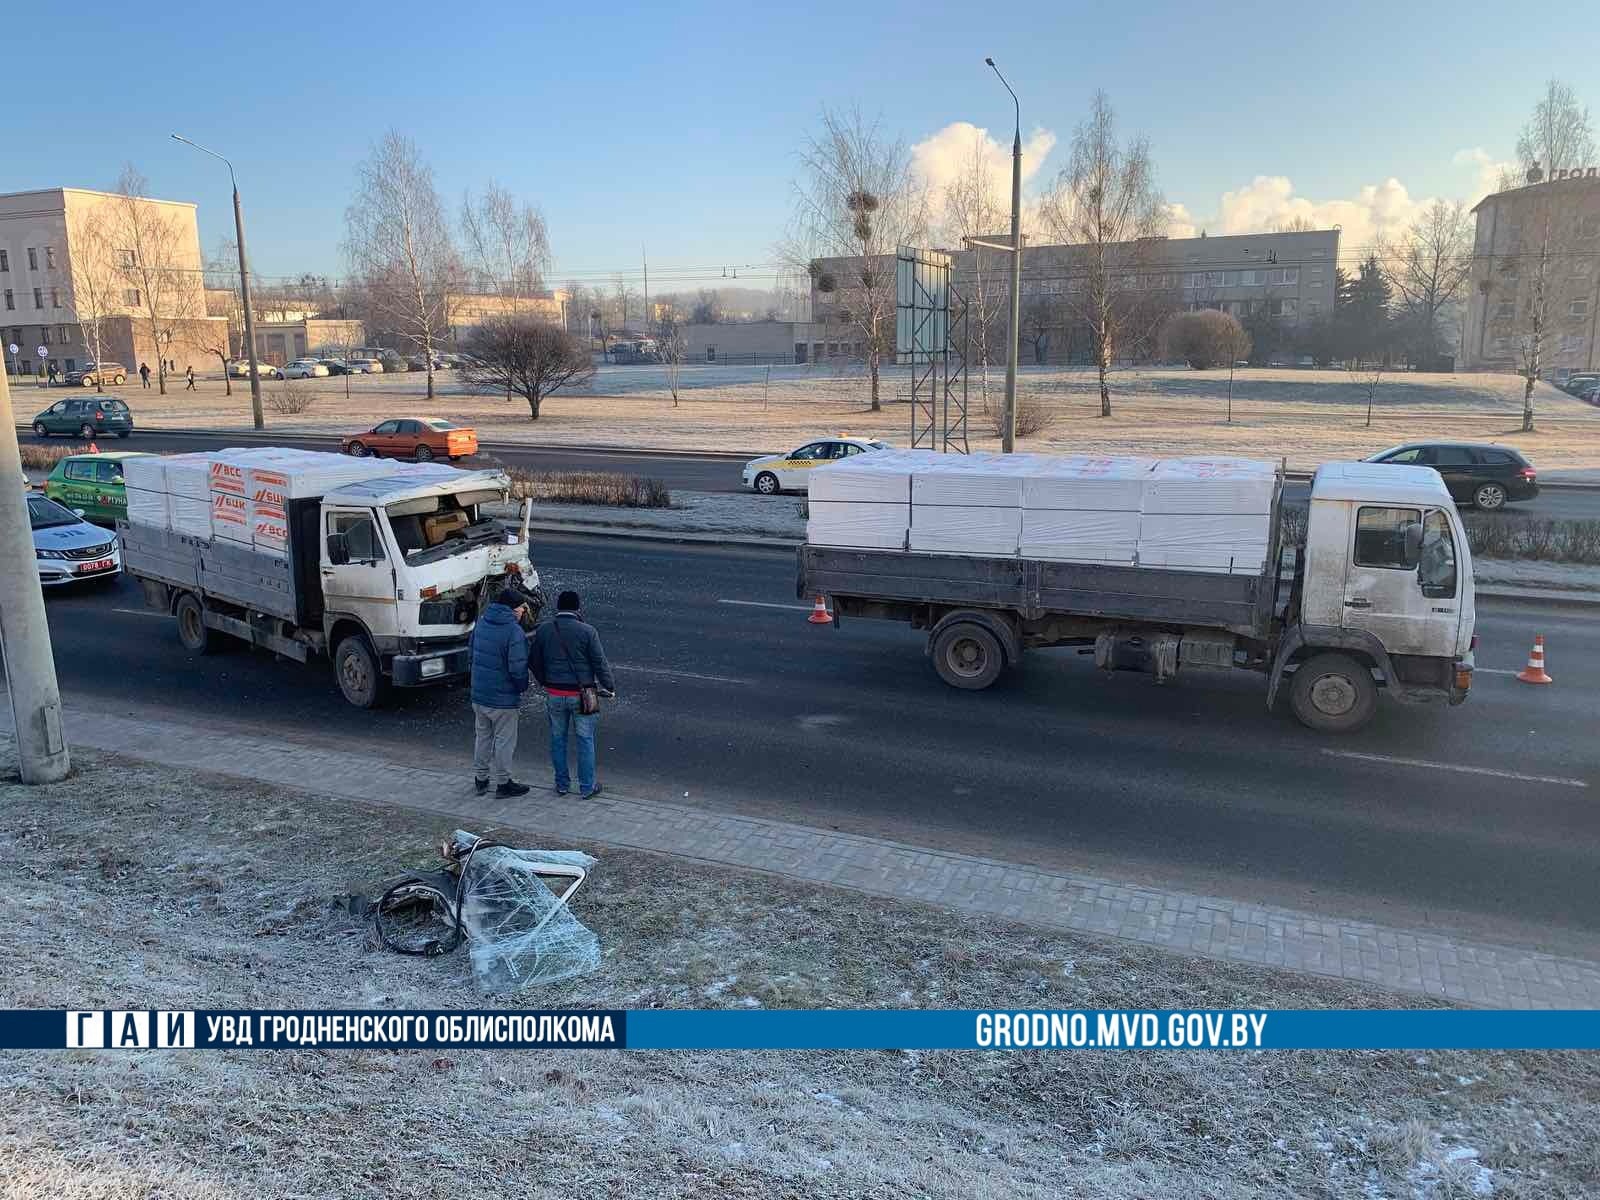 Два грузовика столкнулись в Гродно